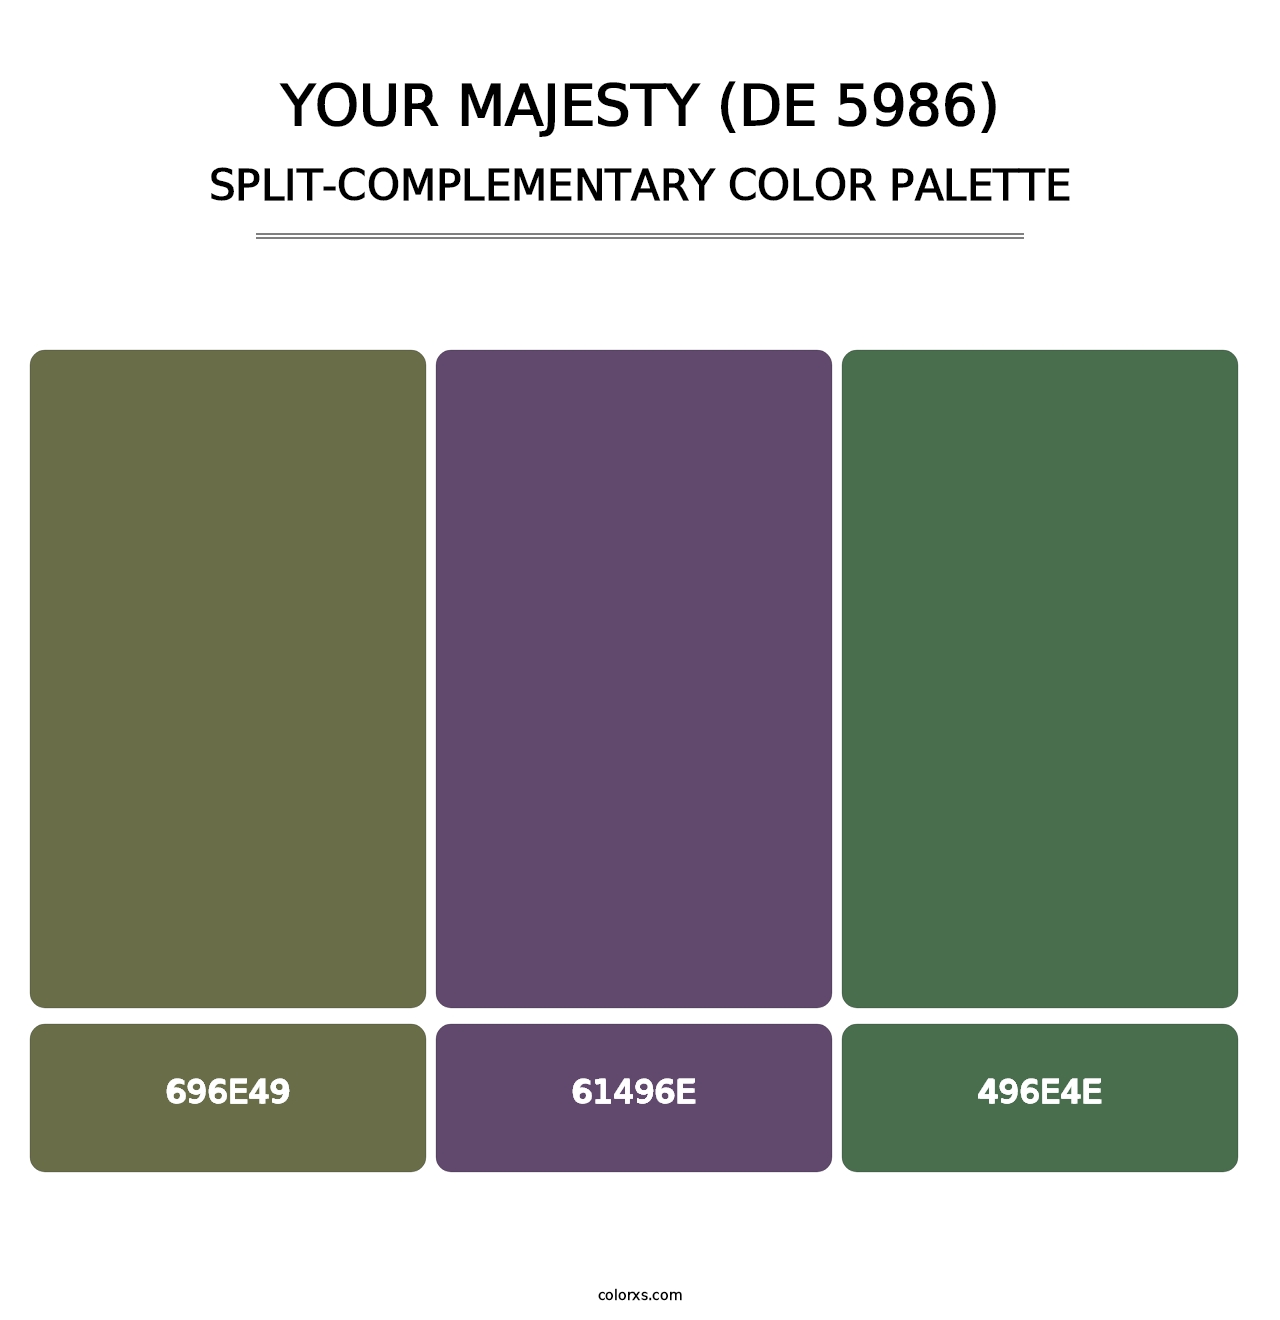 Your Majesty (DE 5986) - Split-Complementary Color Palette